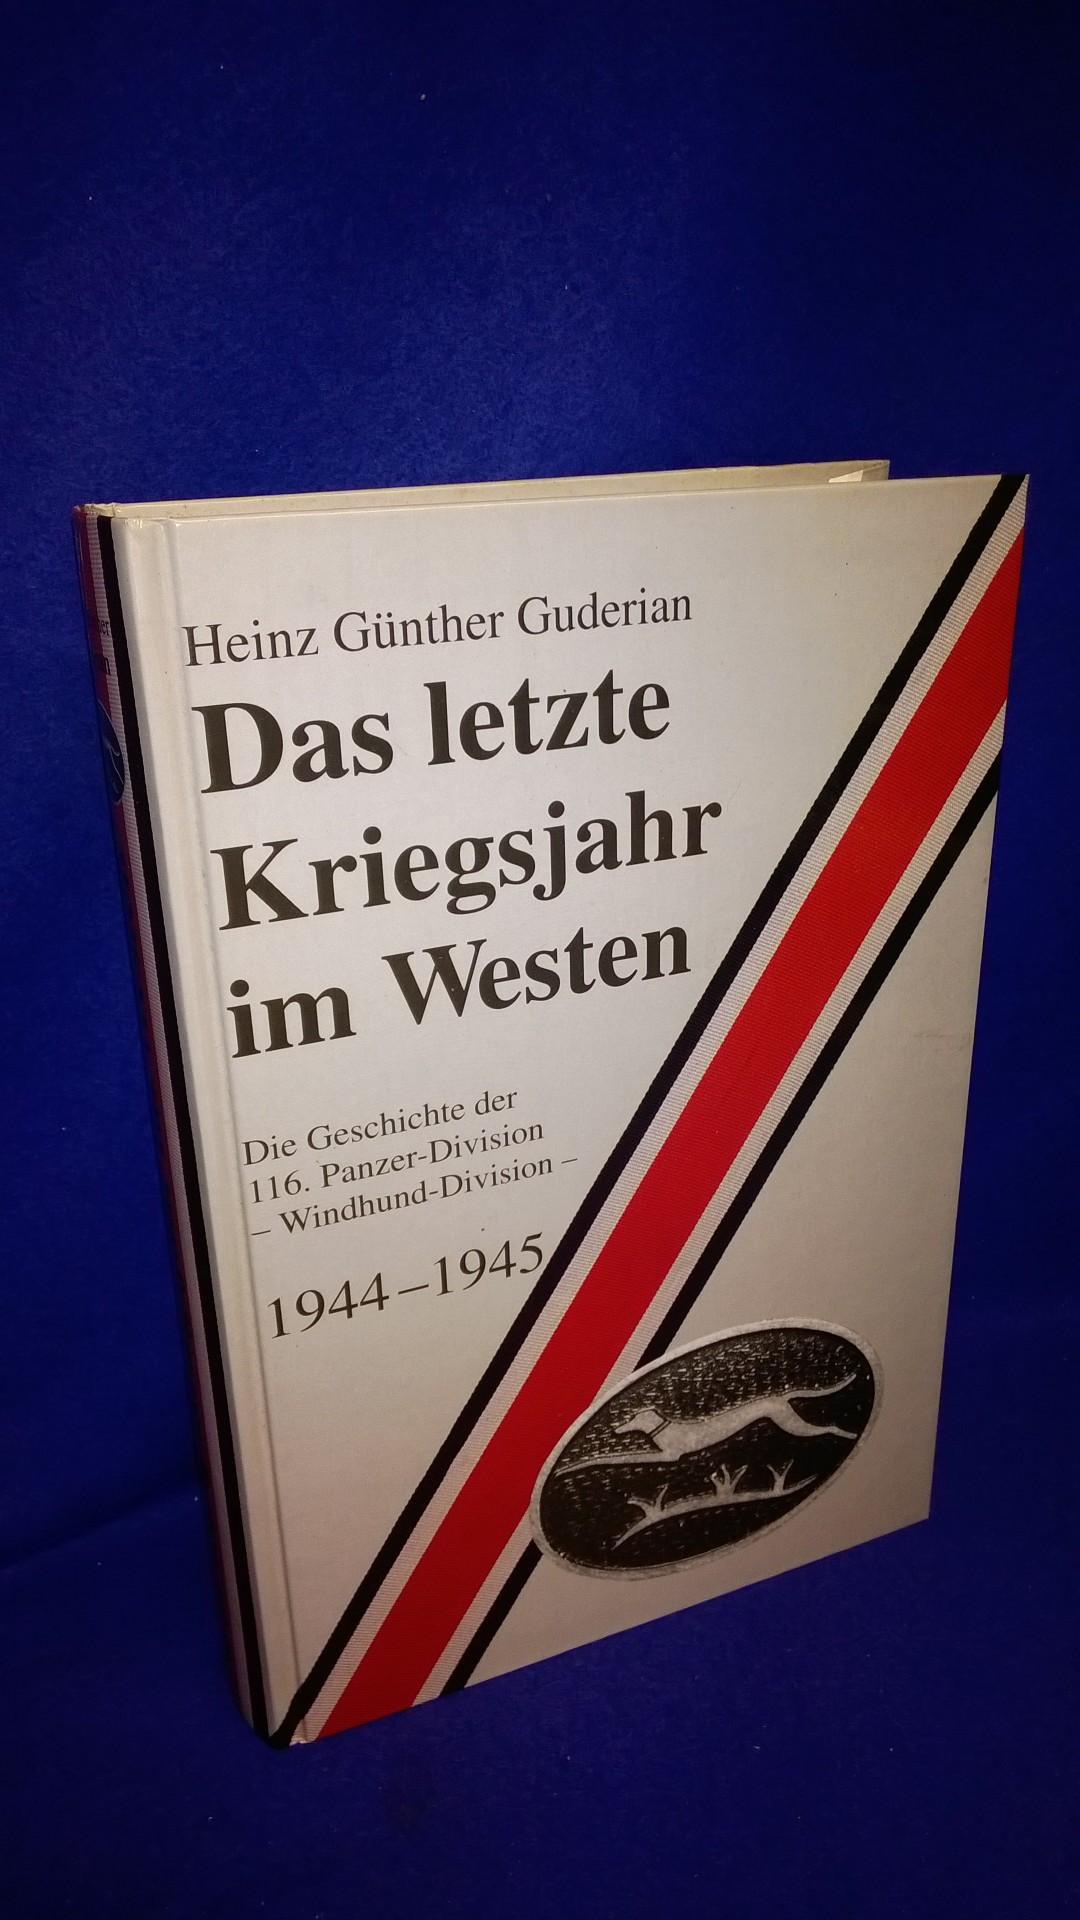 Das letzte Kriegsjahr im Westen: Die Geschichte der 116. Panzer-Division - Windhund-Division - 1944-1945.